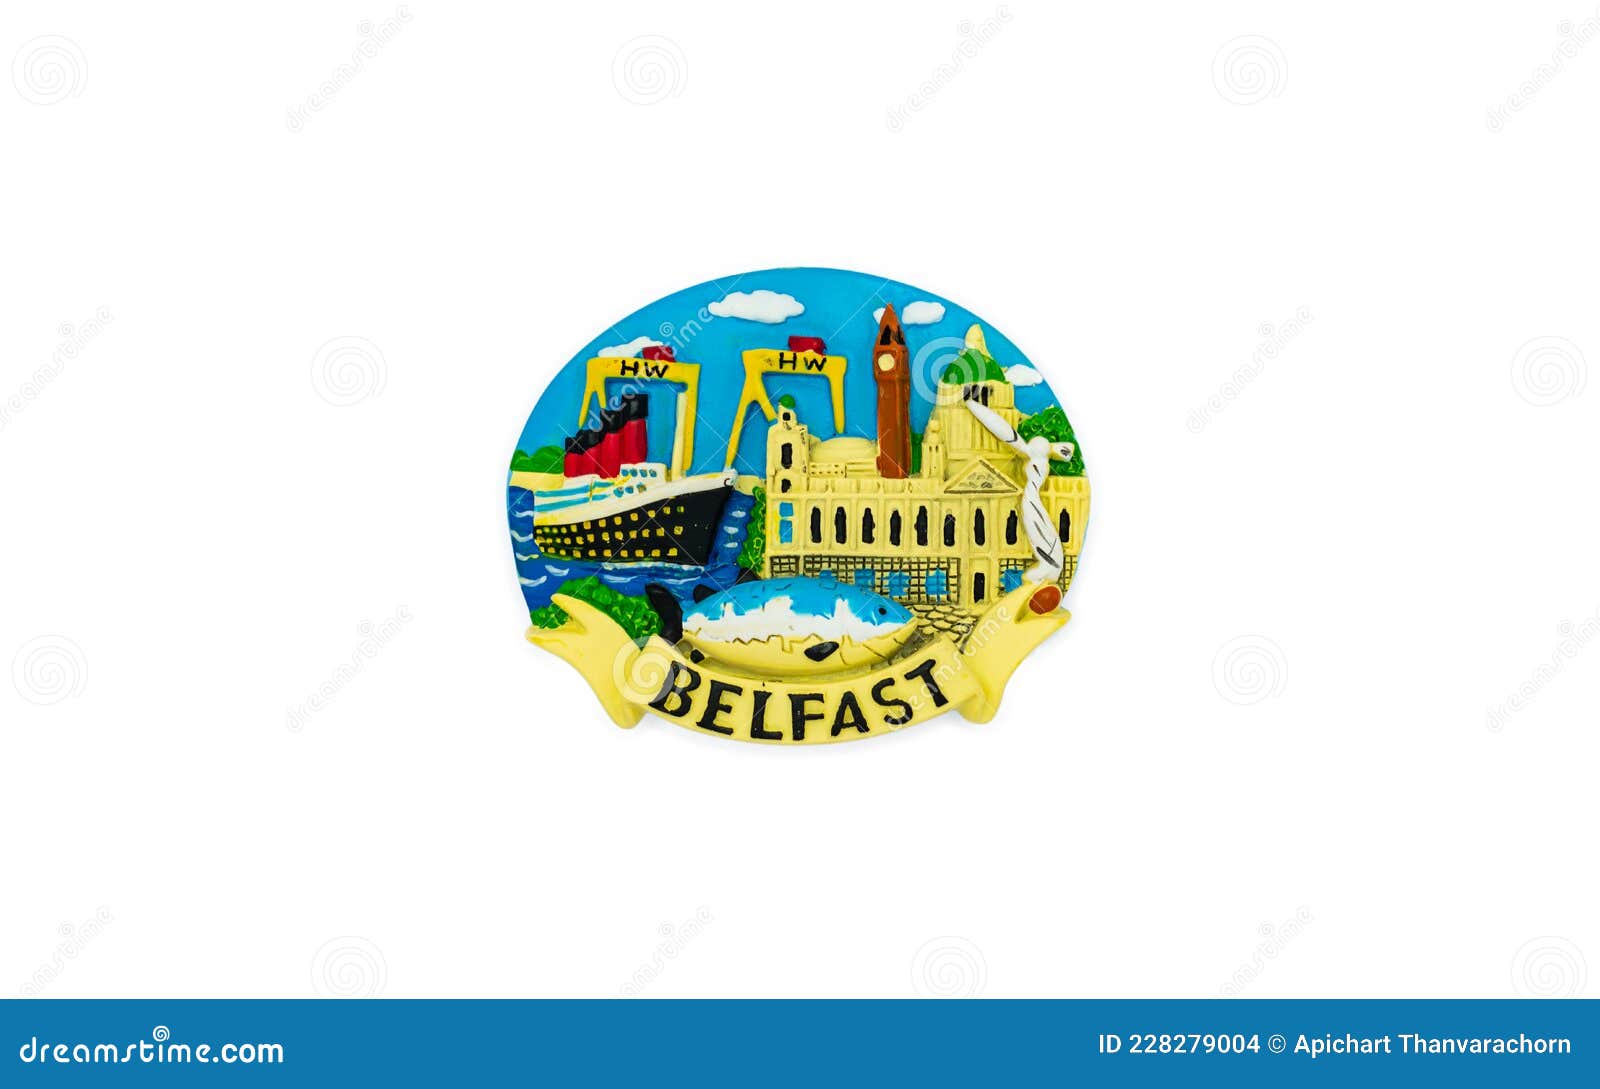 Der Reise Kühlschrank Souvenir Magnet Ndash Belfast Stockfoto - Bild von  kühlraum, farbe: 228279004